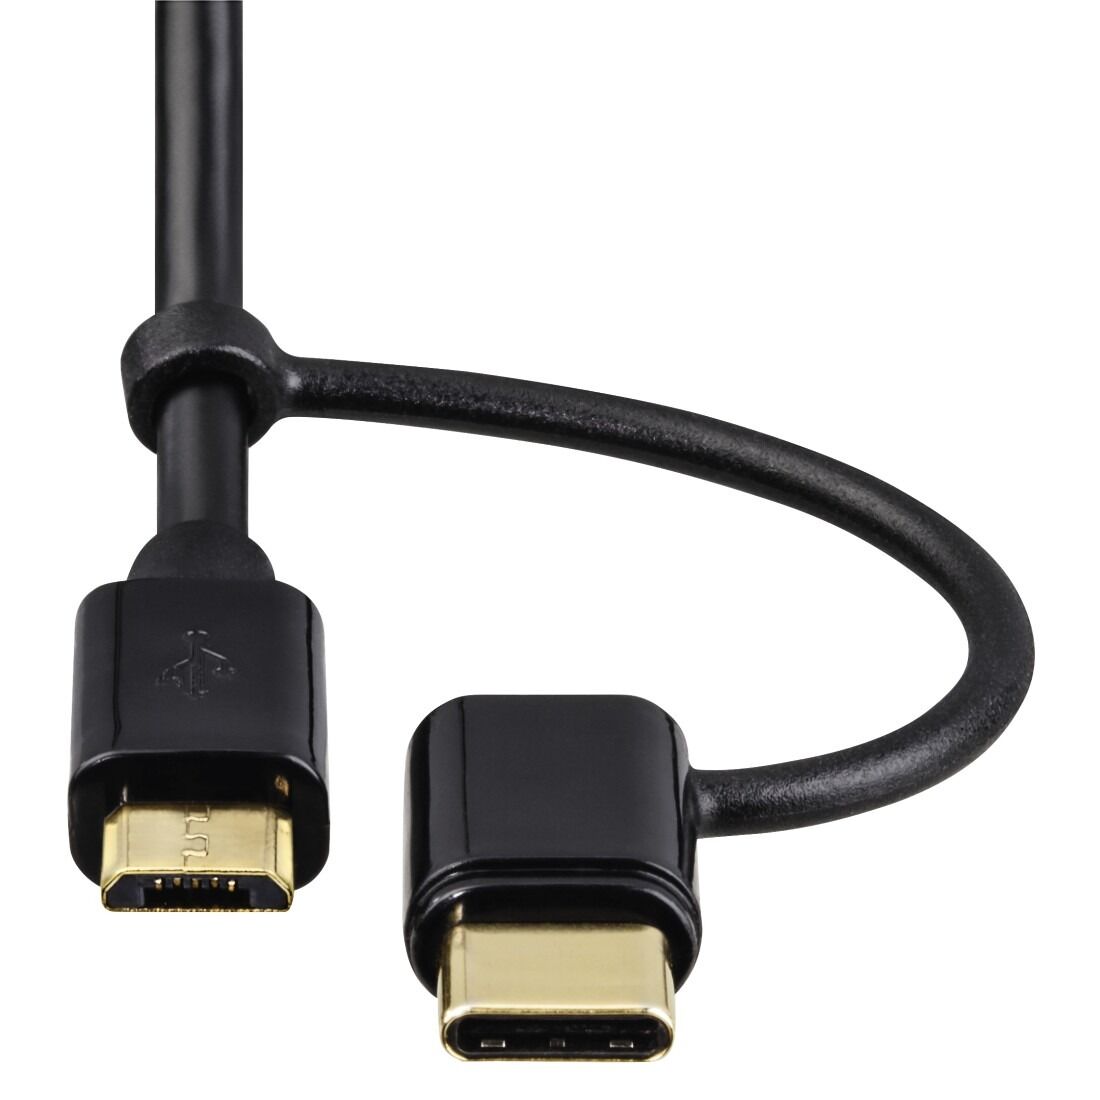 Cablu Hama Micro USB 2 in1 cu adaptor USB Type-C, 1 m, Negru